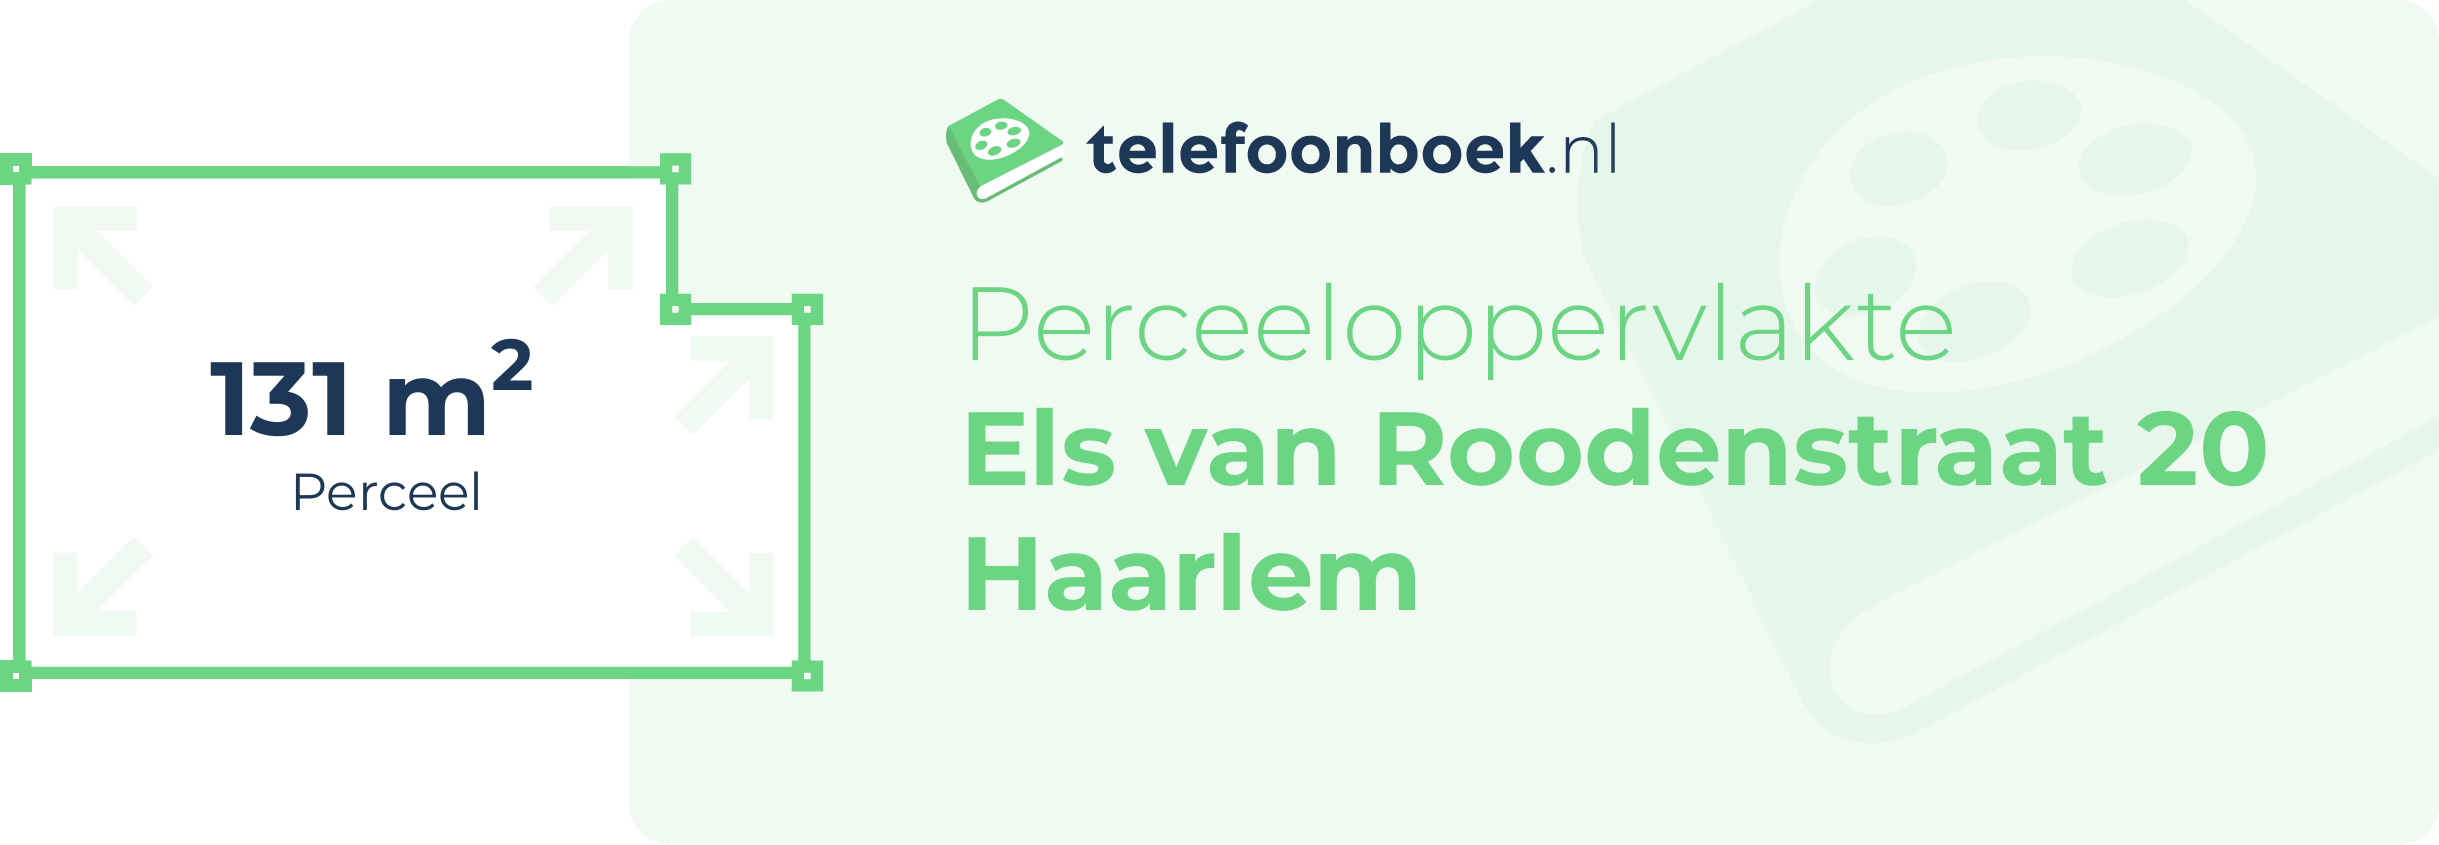 Perceeloppervlakte Els Van Roodenstraat 20 Haarlem